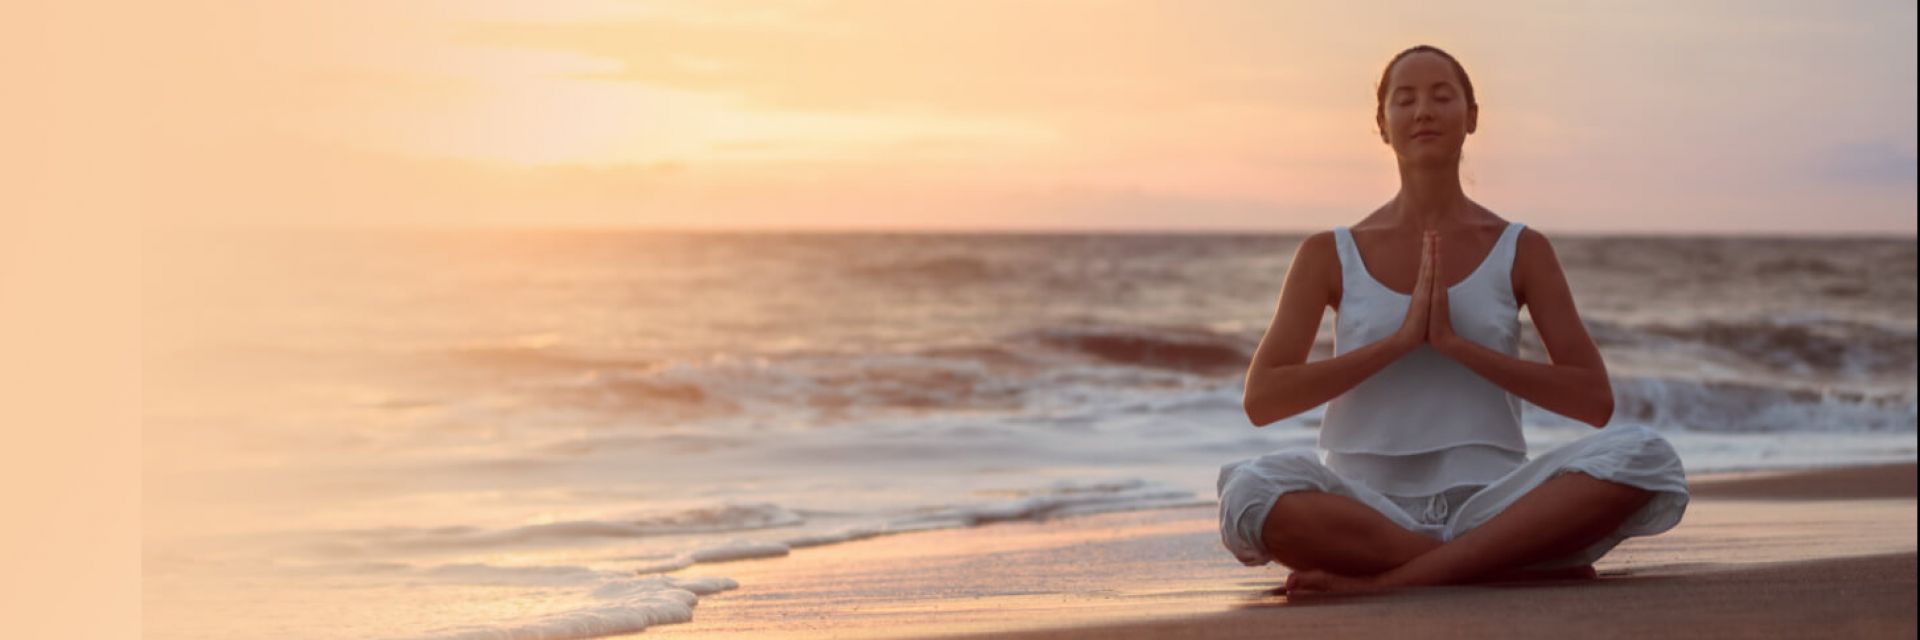 Descubra algumas dicas sobre como meditar